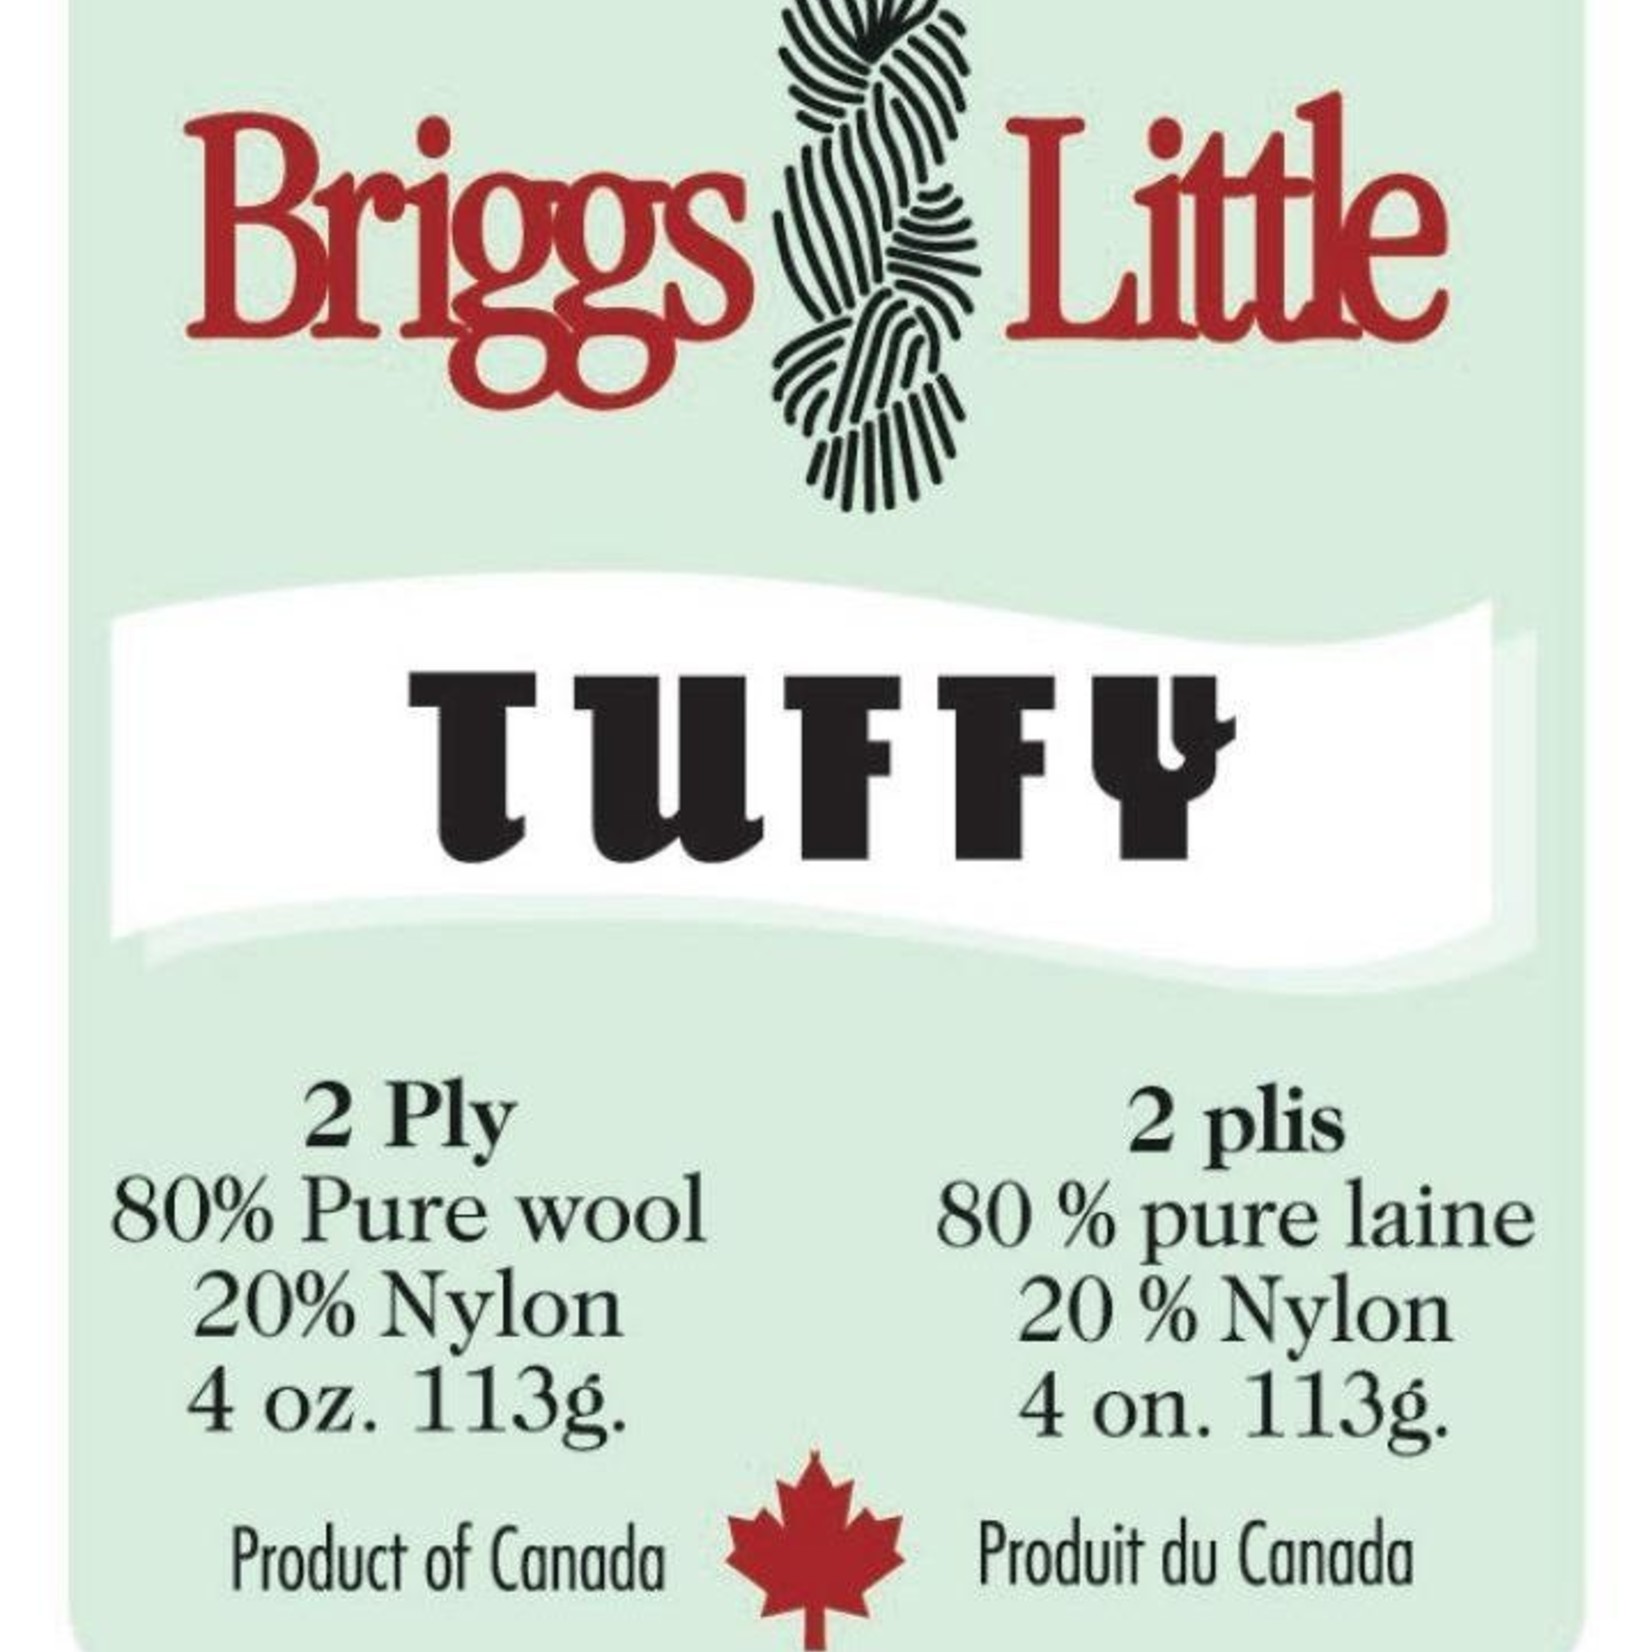 Briggs & Little Tuffy Yarn by Briggs & Little, 2 ply